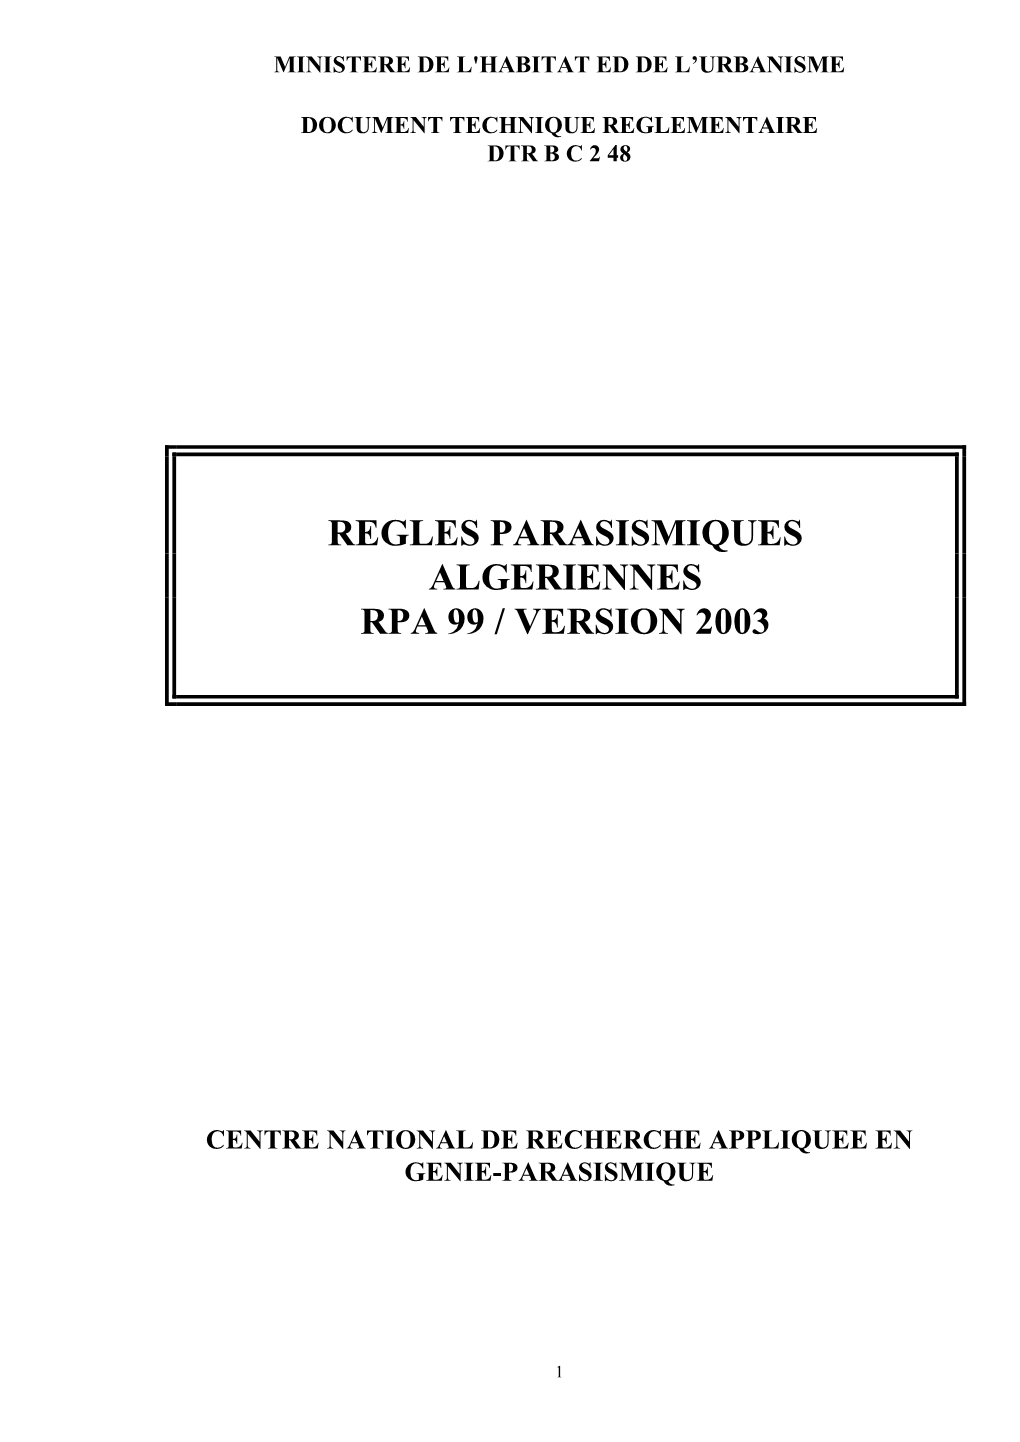 Regles Parasismiques Algeriennes Rpa 99 / Version 2003